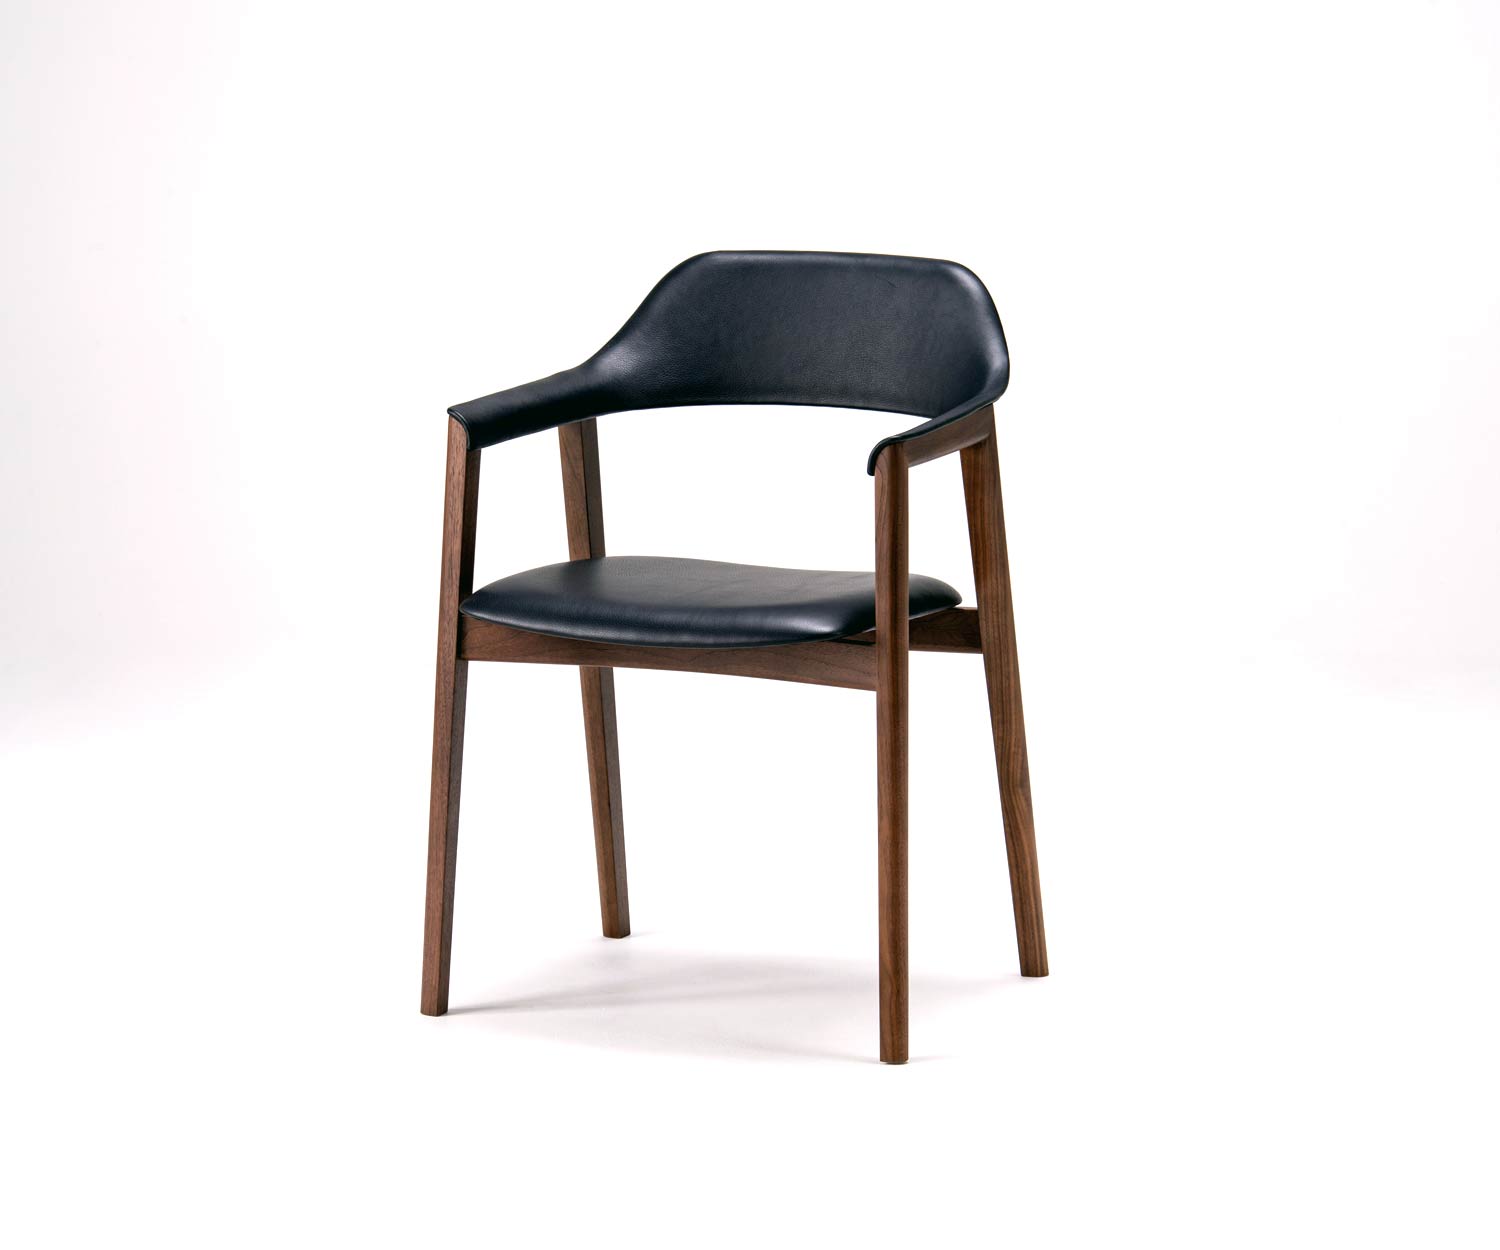 Chaise exclusive Conde House Ten avec accoudoirs rembourrés et assise en cuir